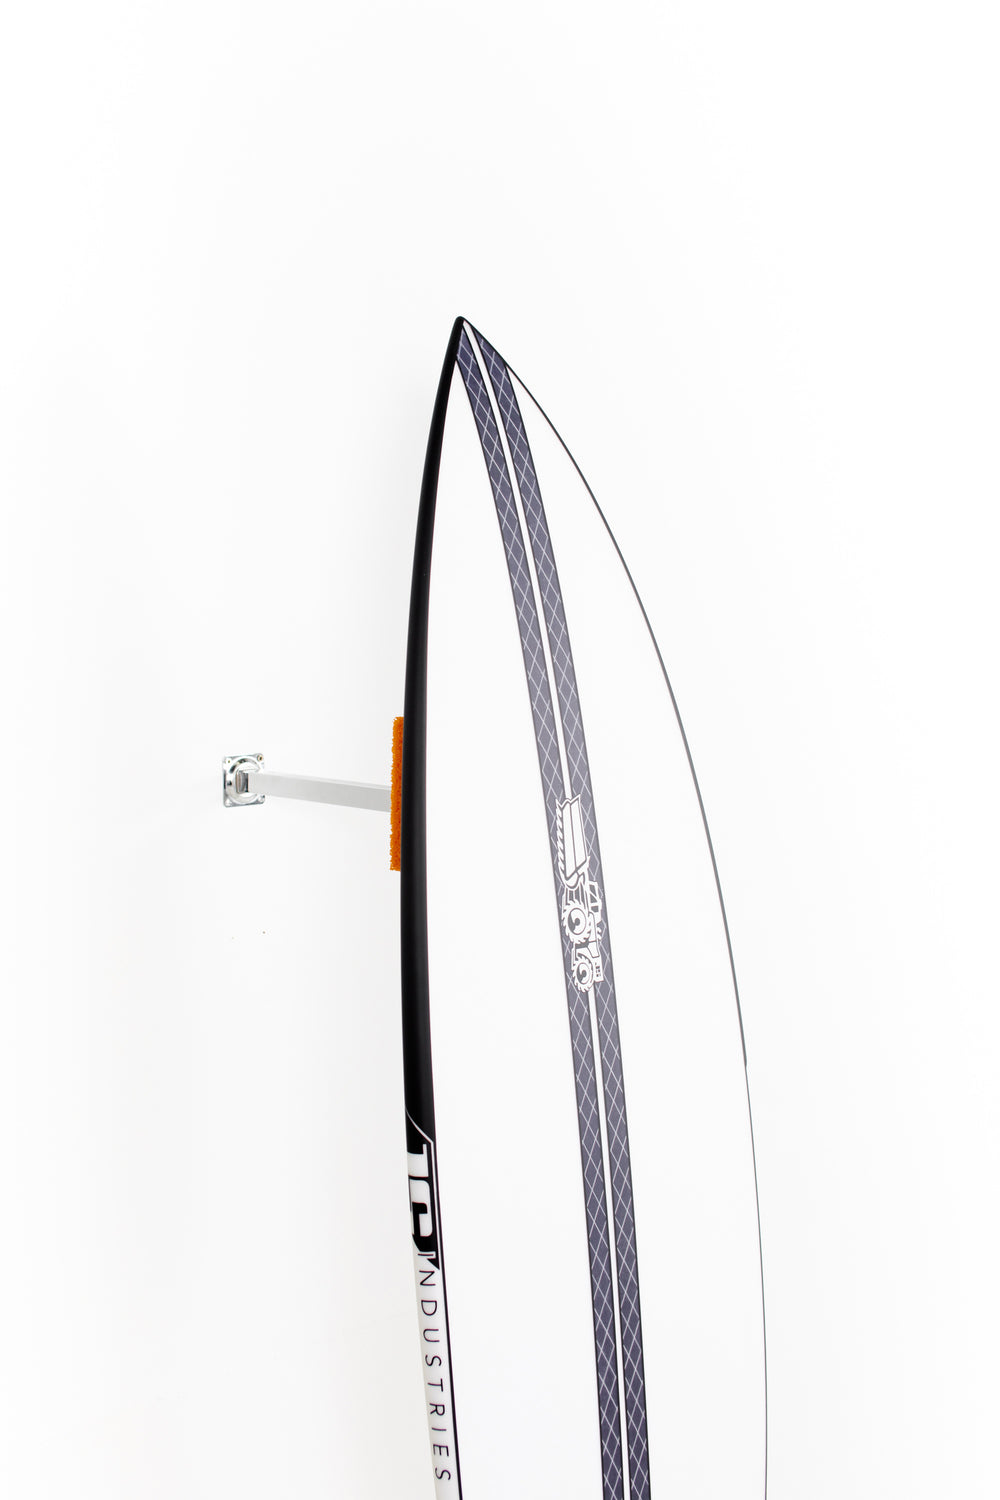 JS Surfboards - XERO HYFI - 6'2